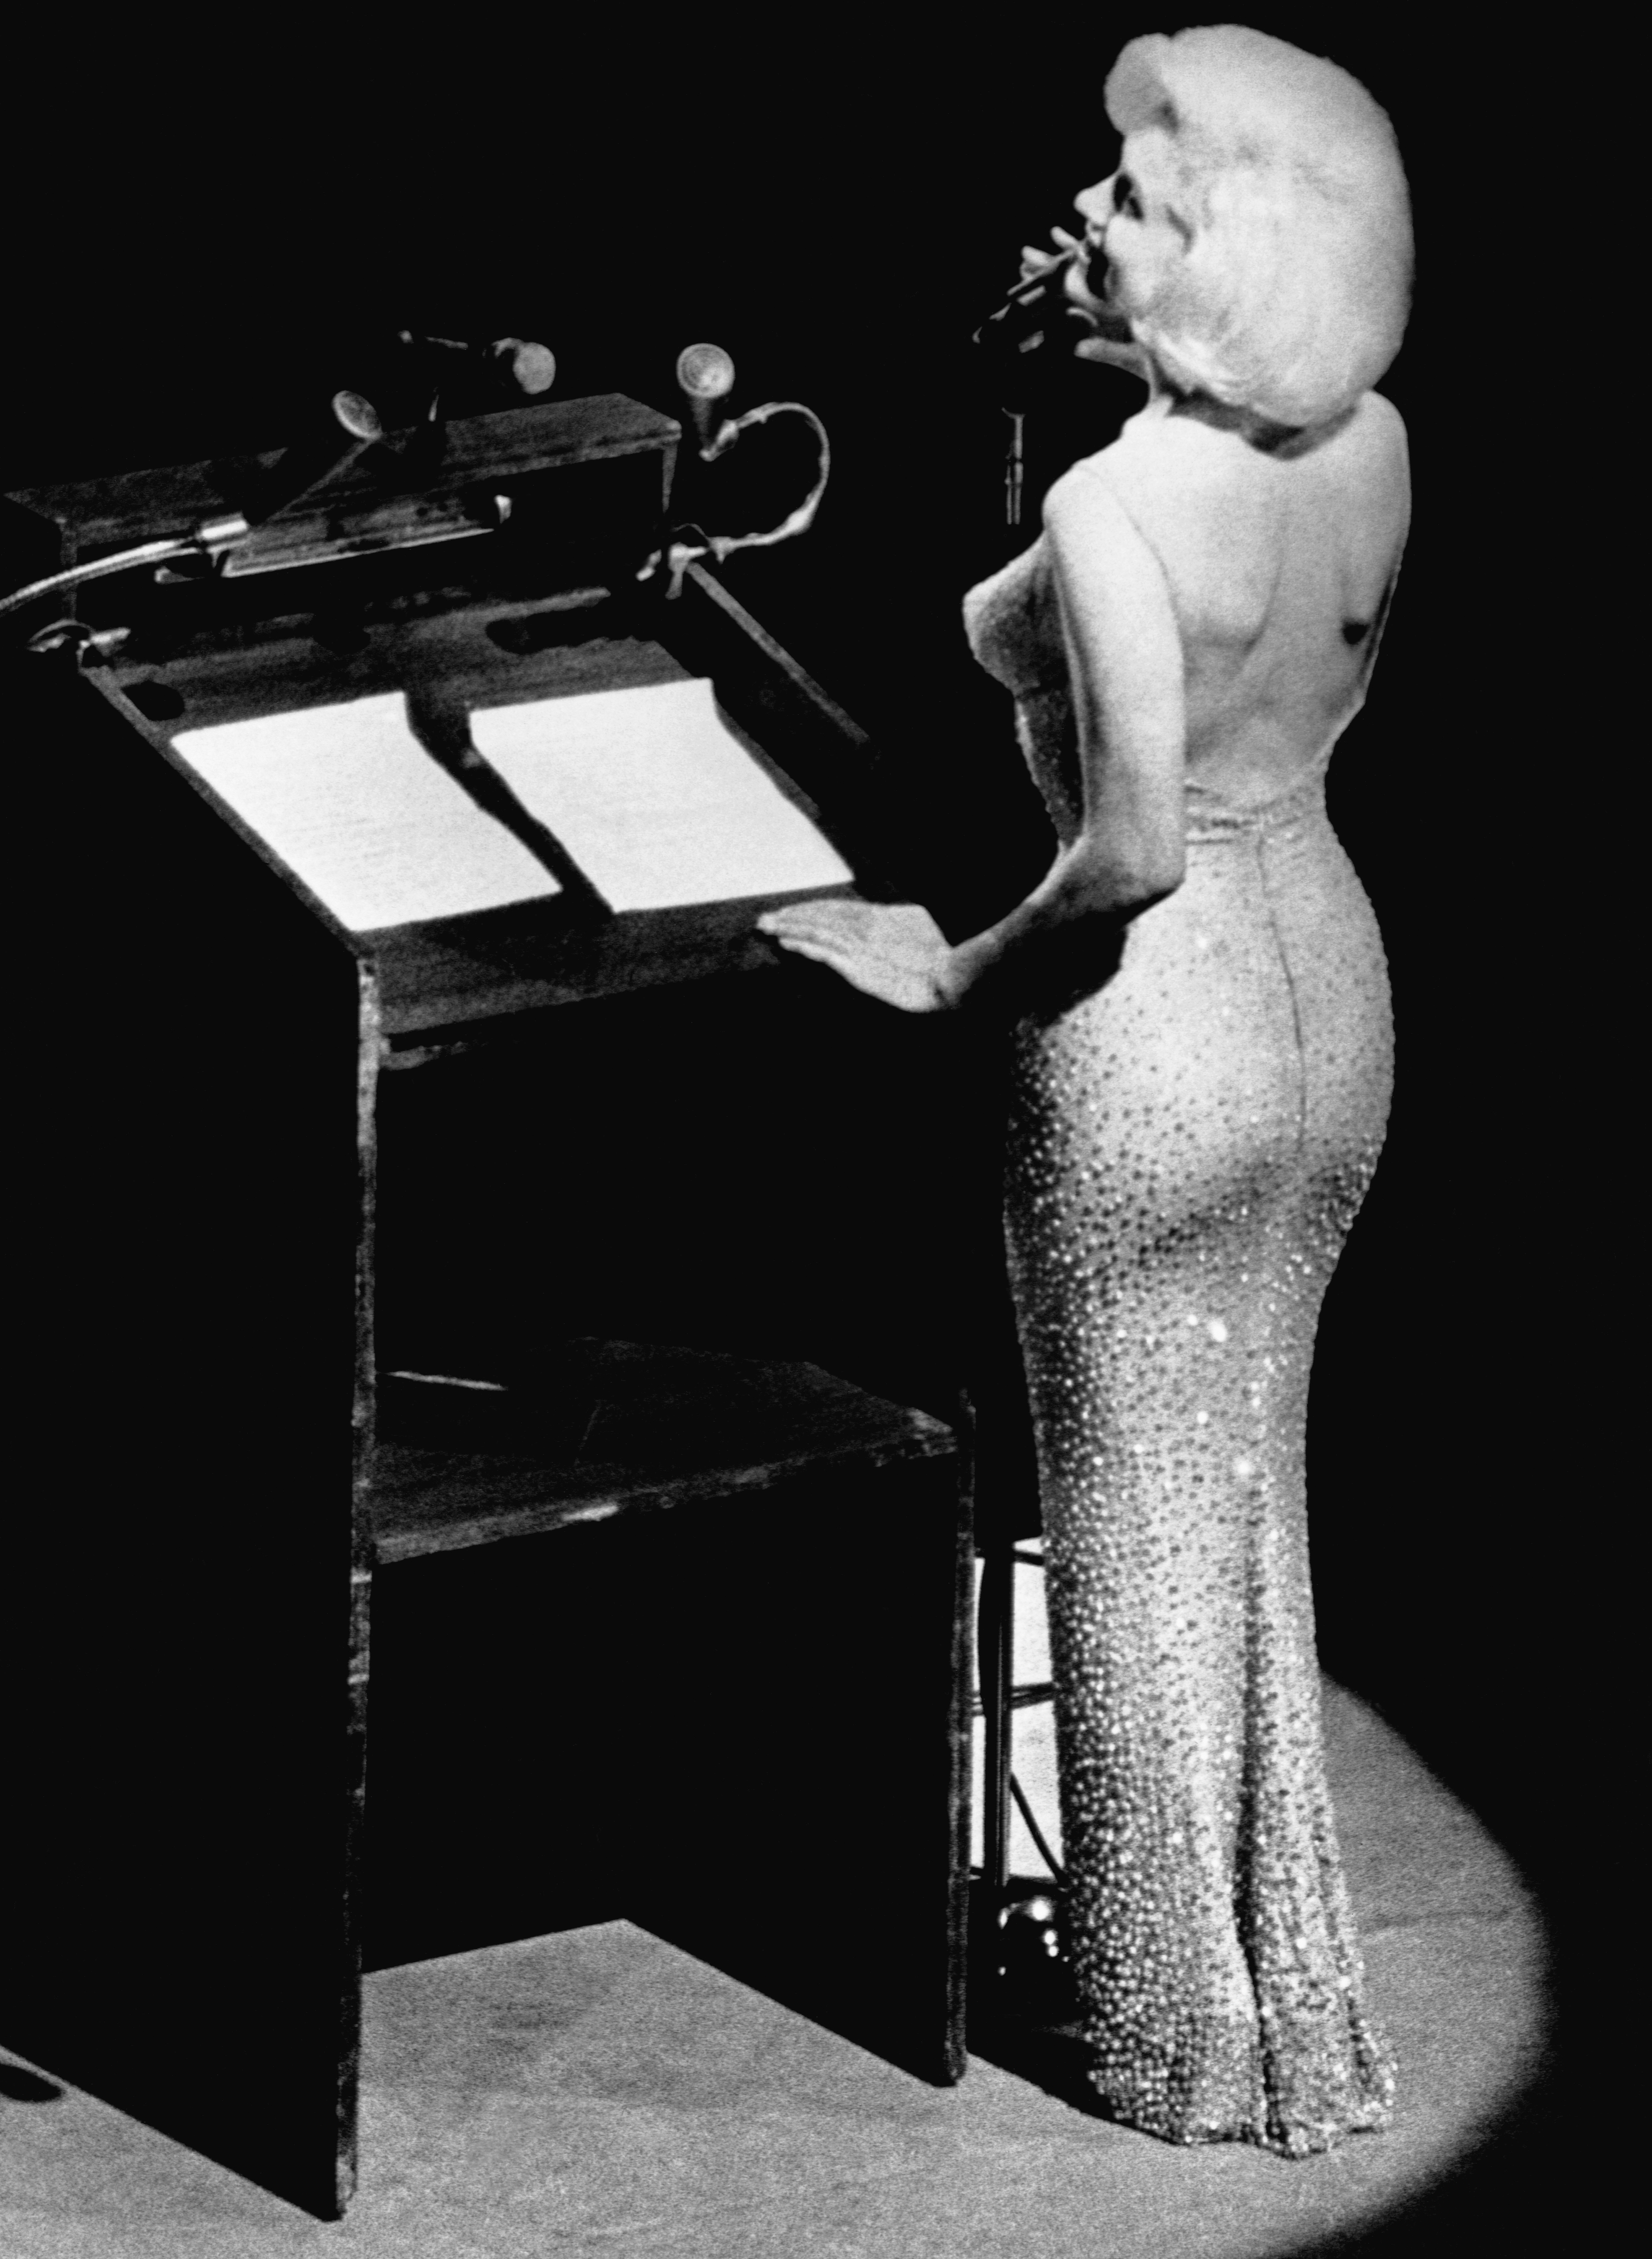 Marilyn Monroe Singing “Happy Birthday” to JFK